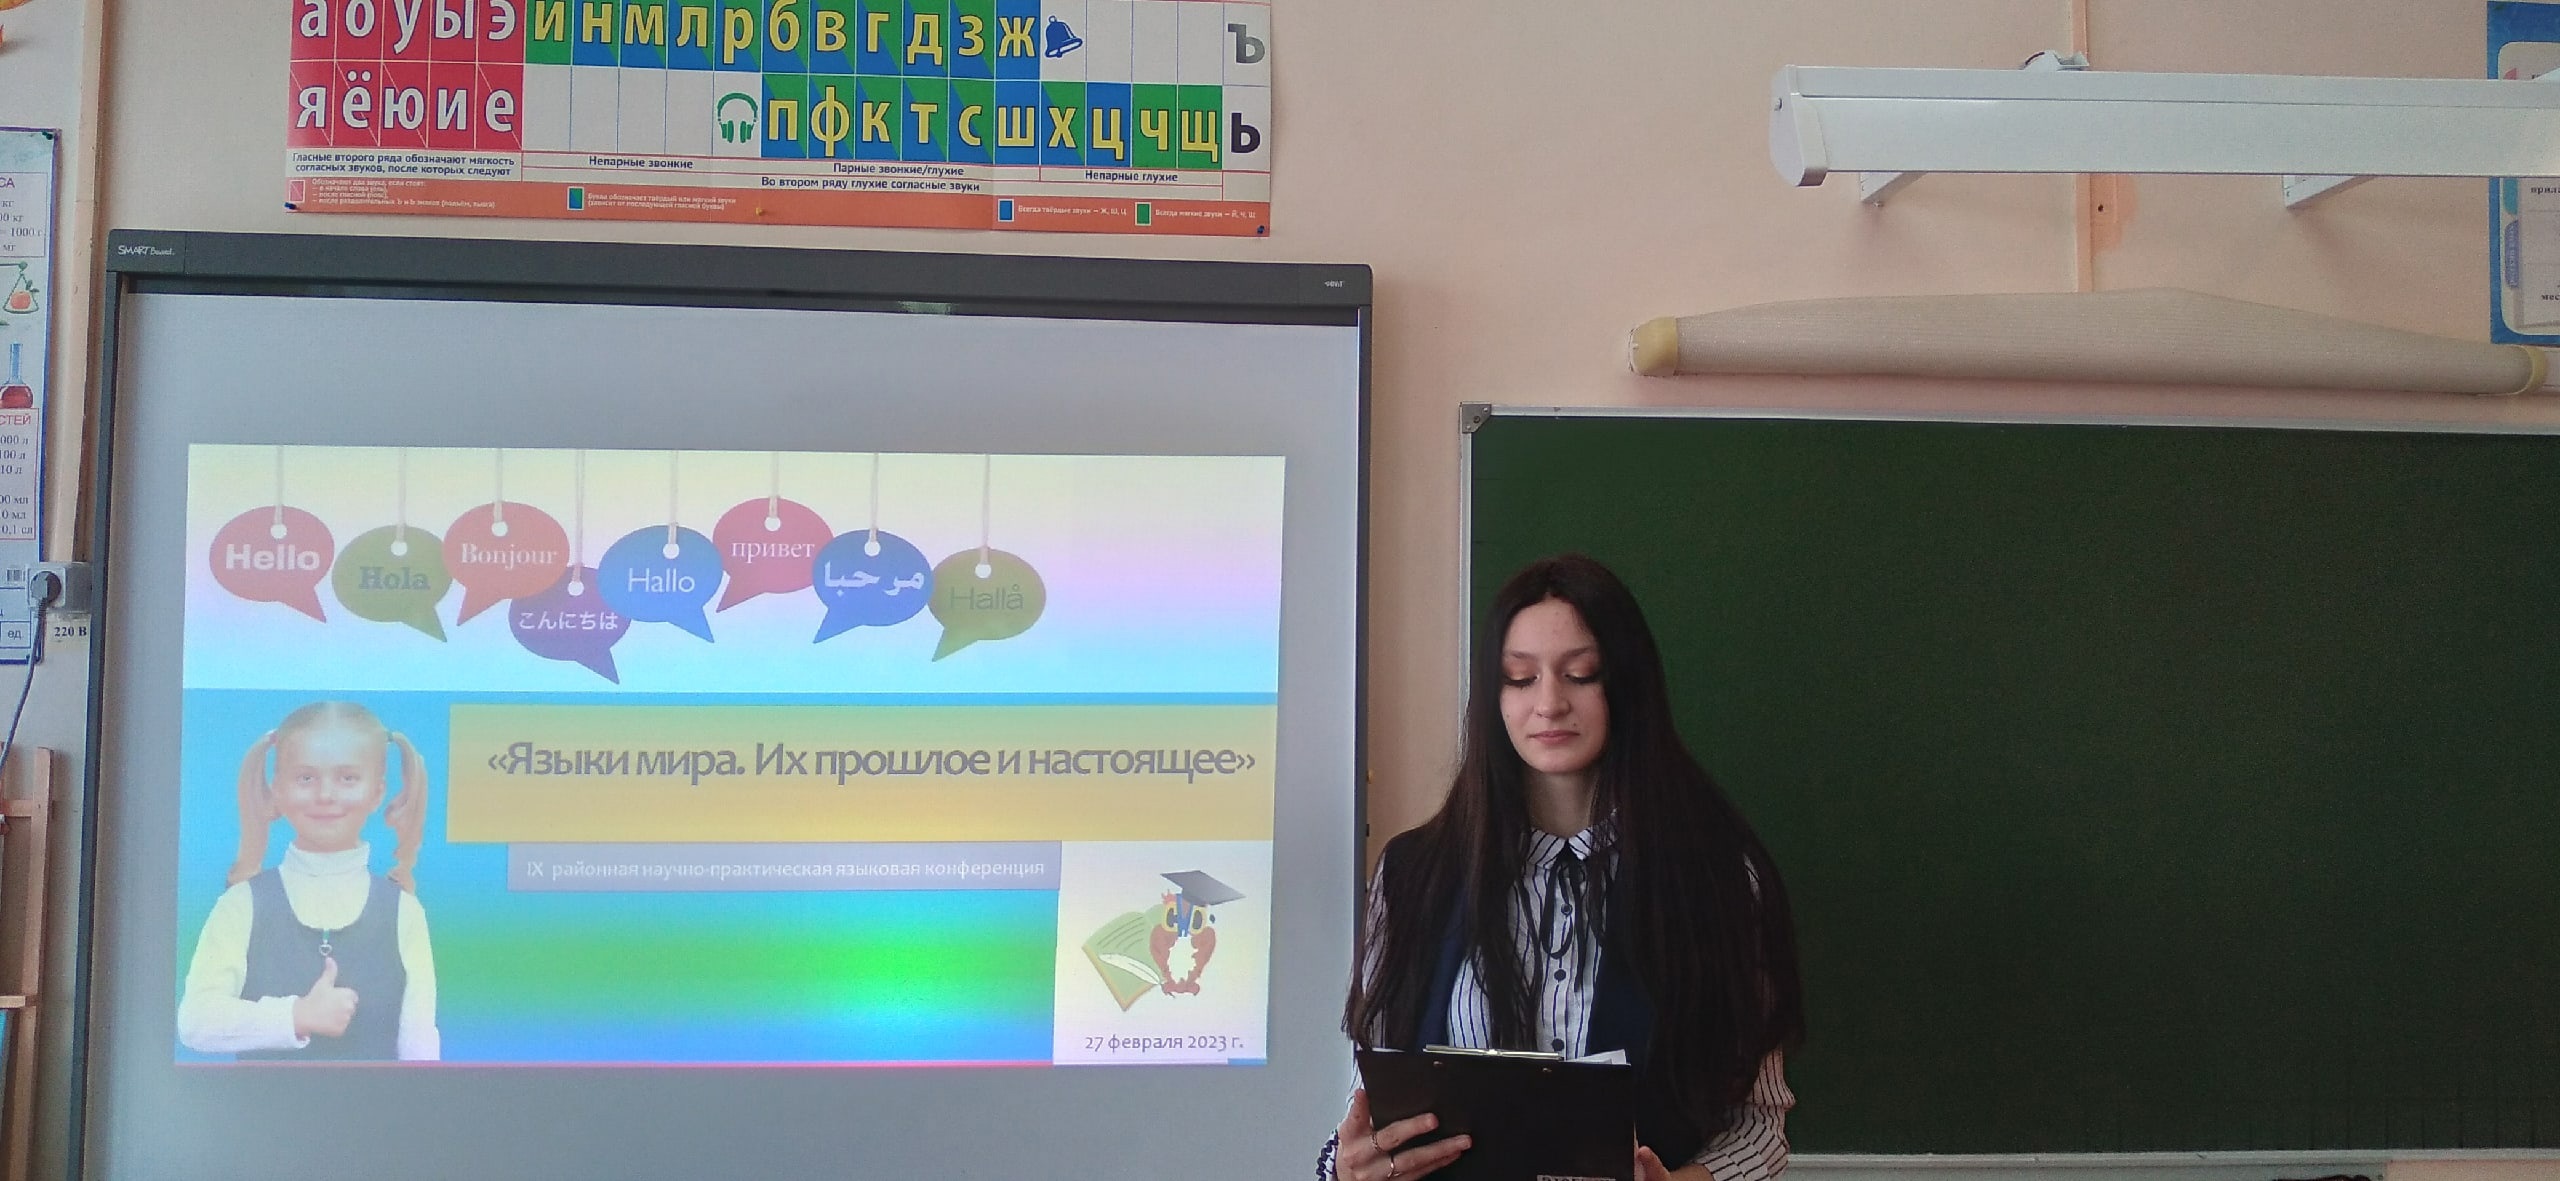 27 февраля на базе Карсунской средней школы им.Д.Н.Гусева состоялась IX районная научно-практическая языковая конференция.